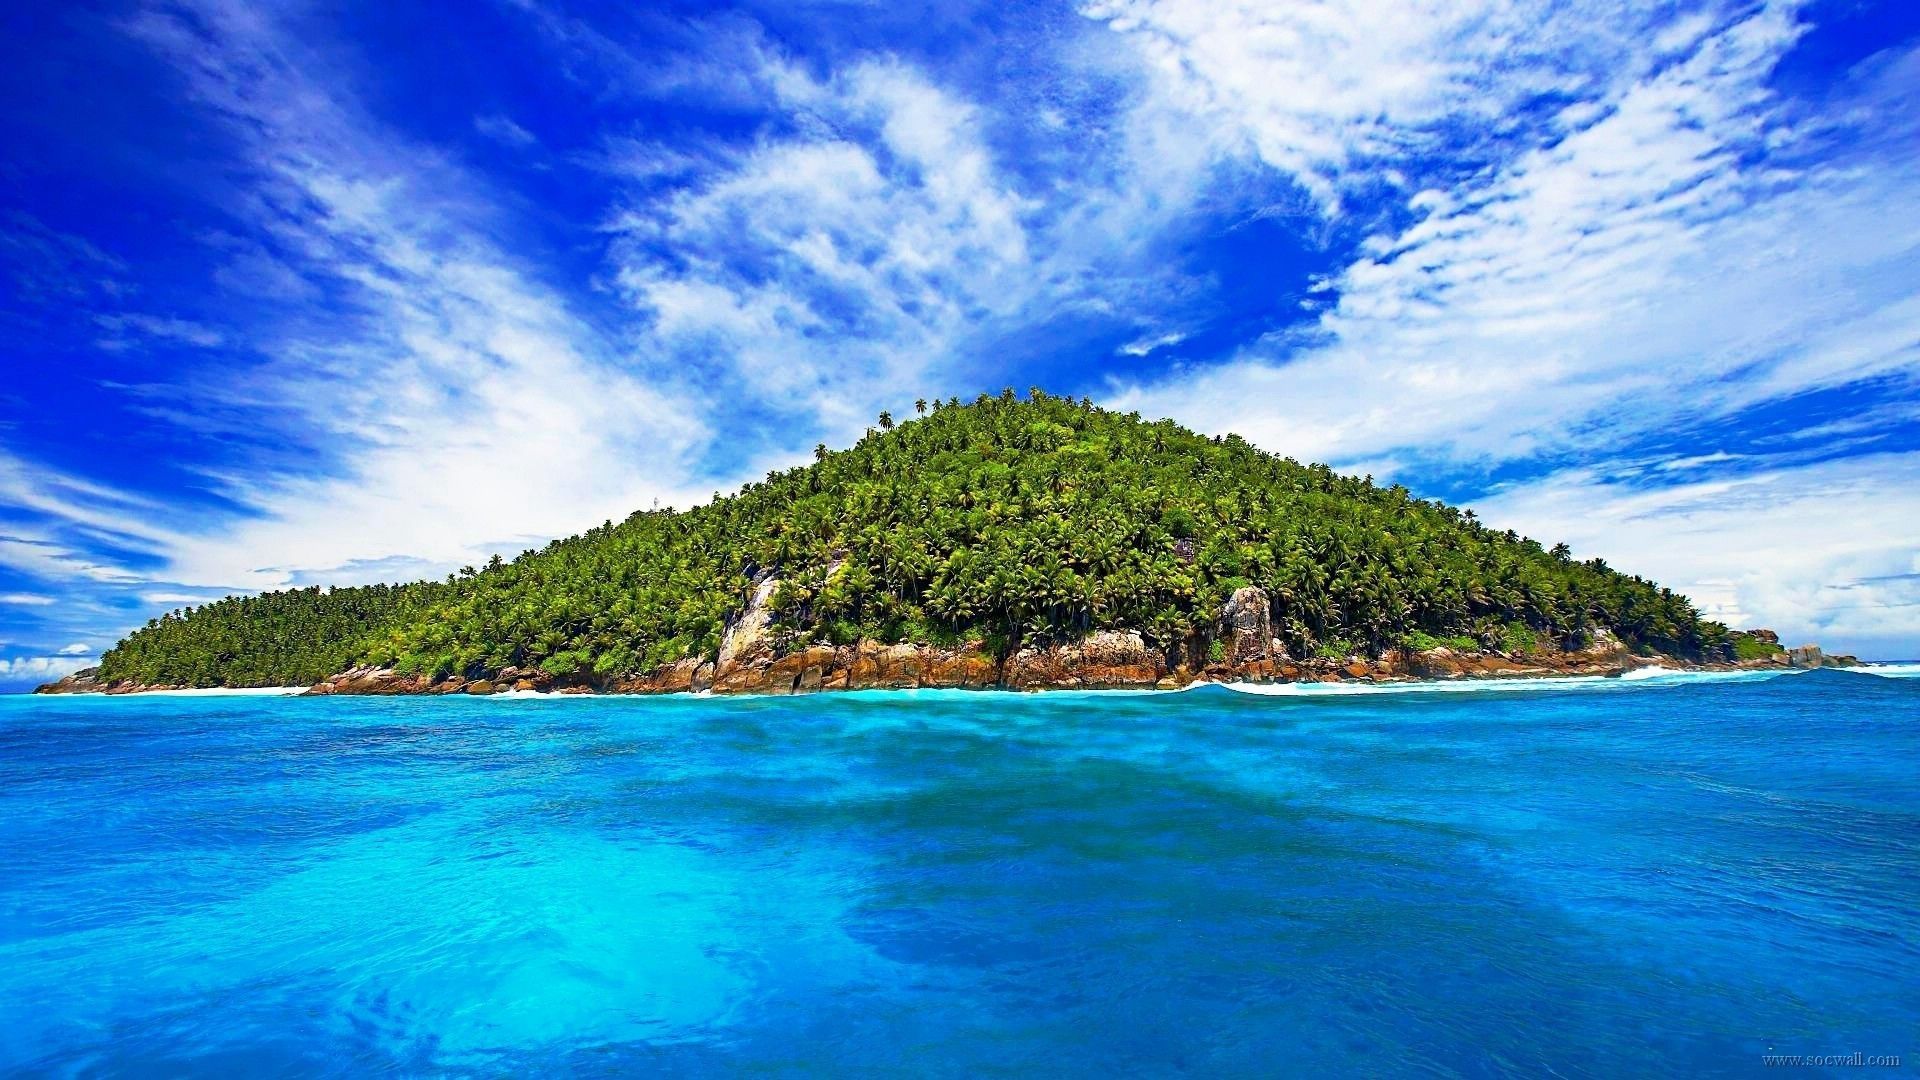 عکس خیره کننده از جزیره و دریای زیبای کارائیب